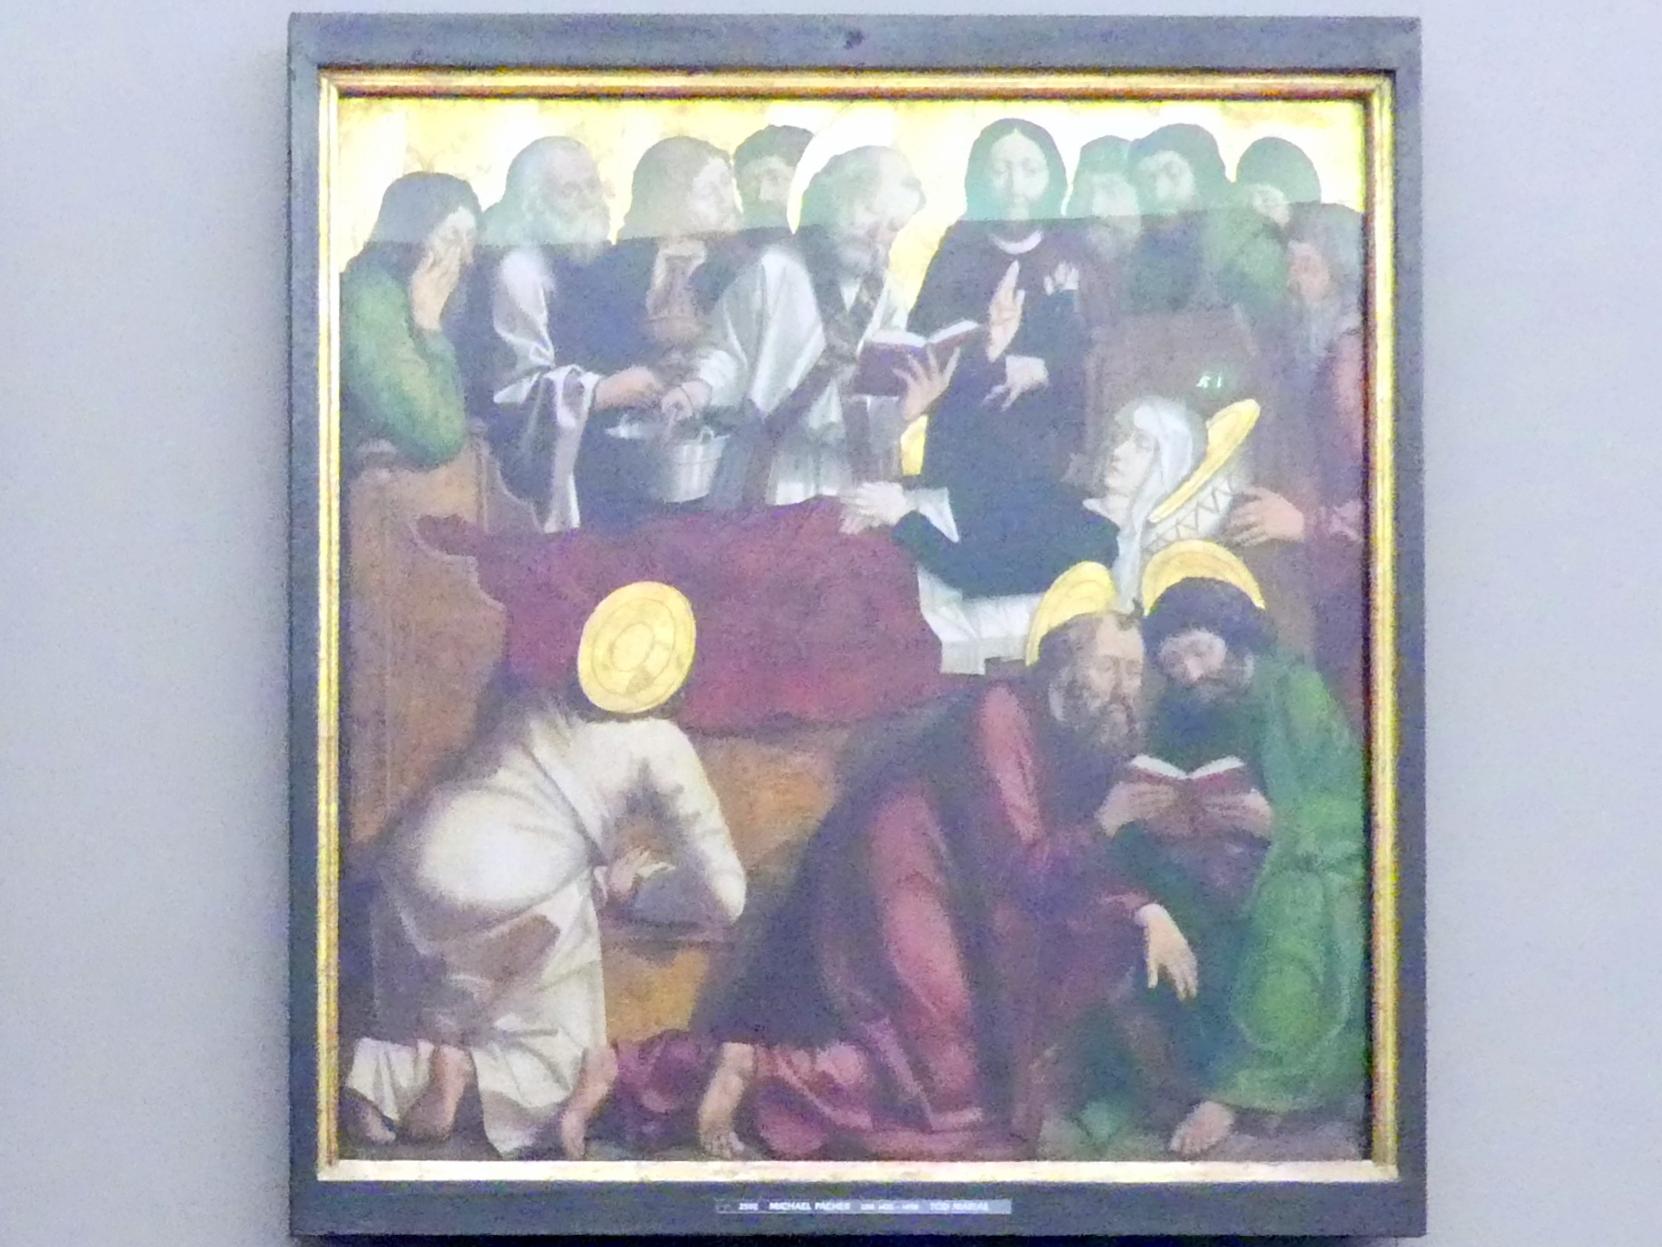 Michael Pacher (1461–1497), Innenseite des Schreinflügels des Hochaltars 'Tod Mariens', St. Lorenzen, Pfarrkirche St. Laurentius, jetzt München, Alte Pinakothek, Erdgeschoss Saal II, 1465